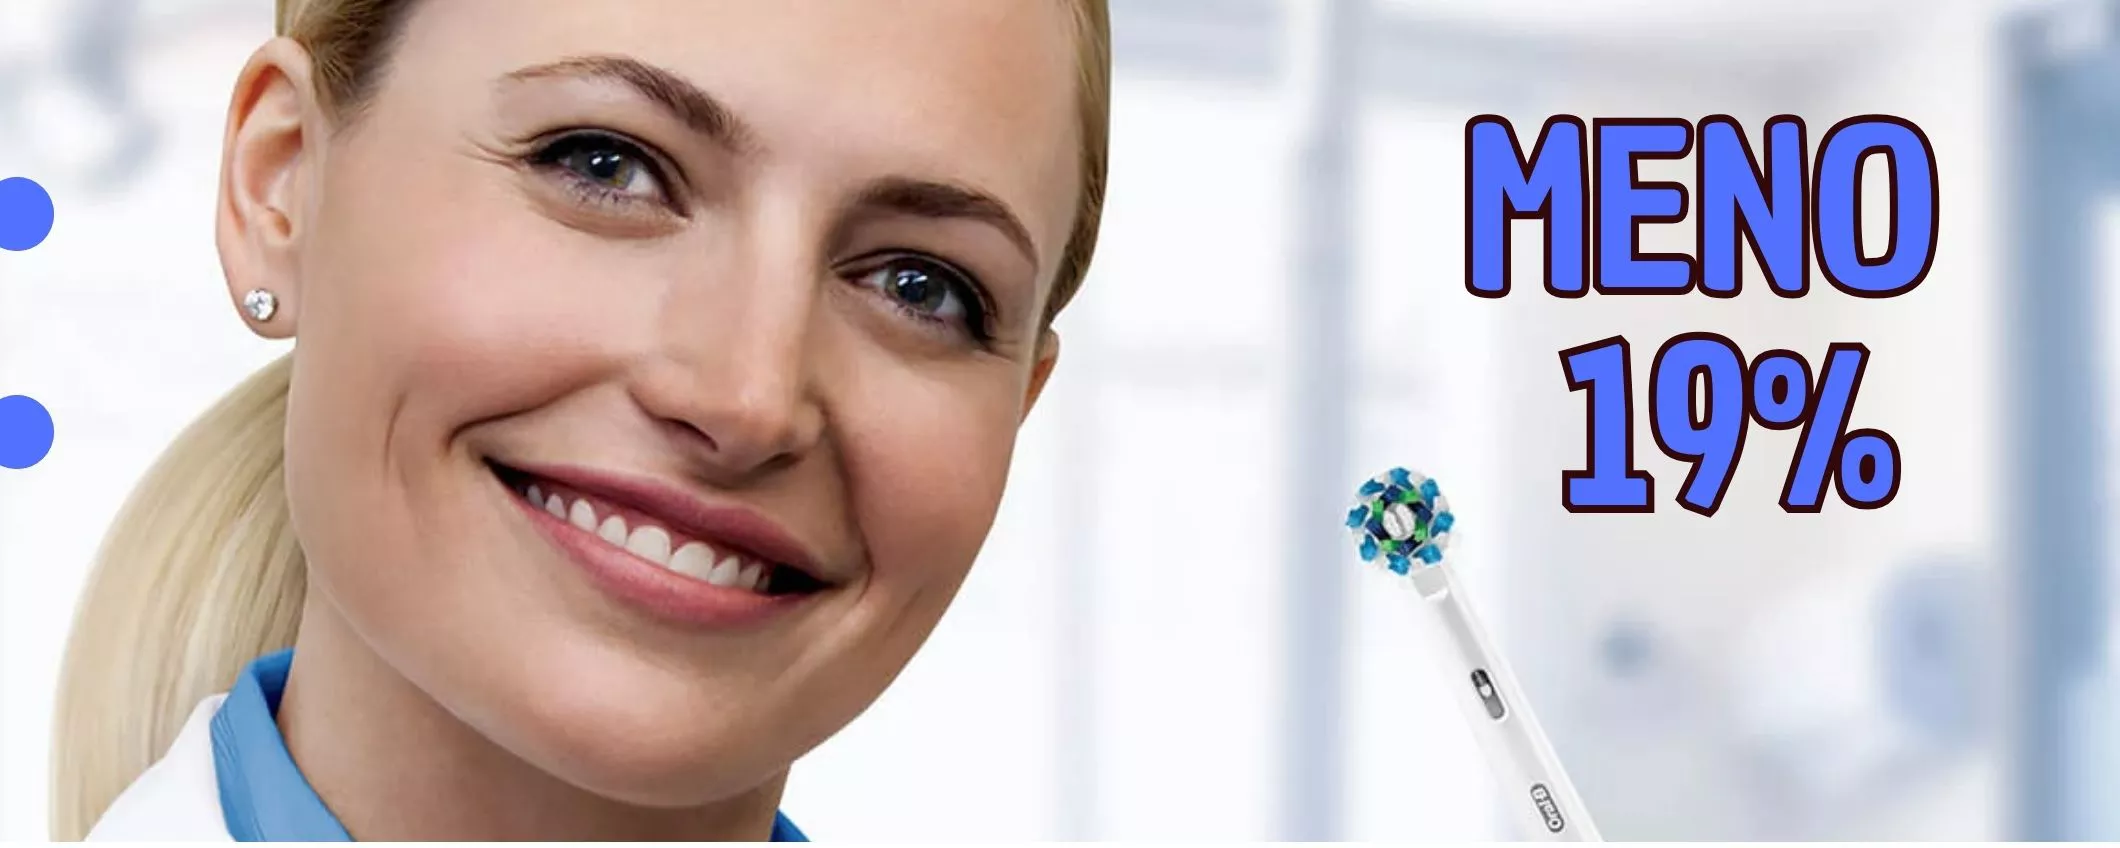 Oral-B Smart 4 4000N, l'igiene orale perfetta con uno sconto eccezionale!